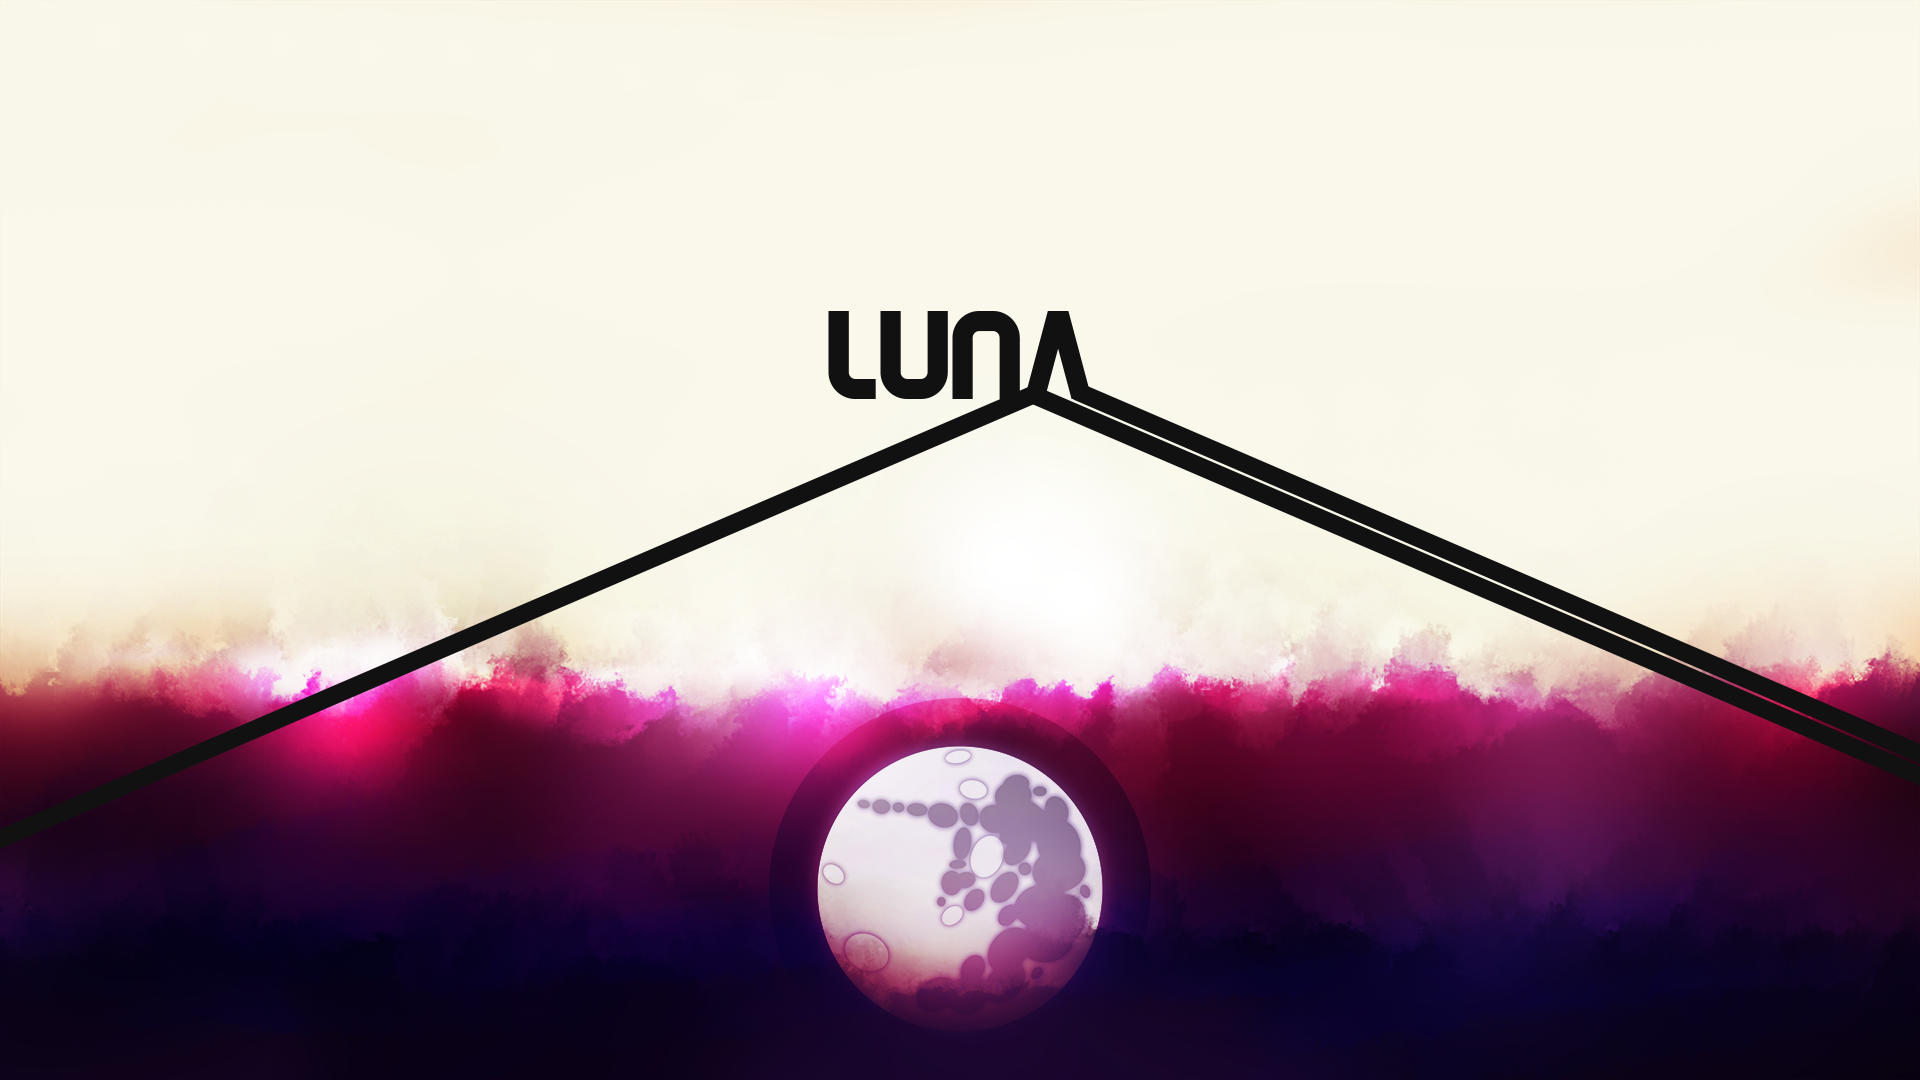 Luna (Moonlight) - Alternate Versions Inside